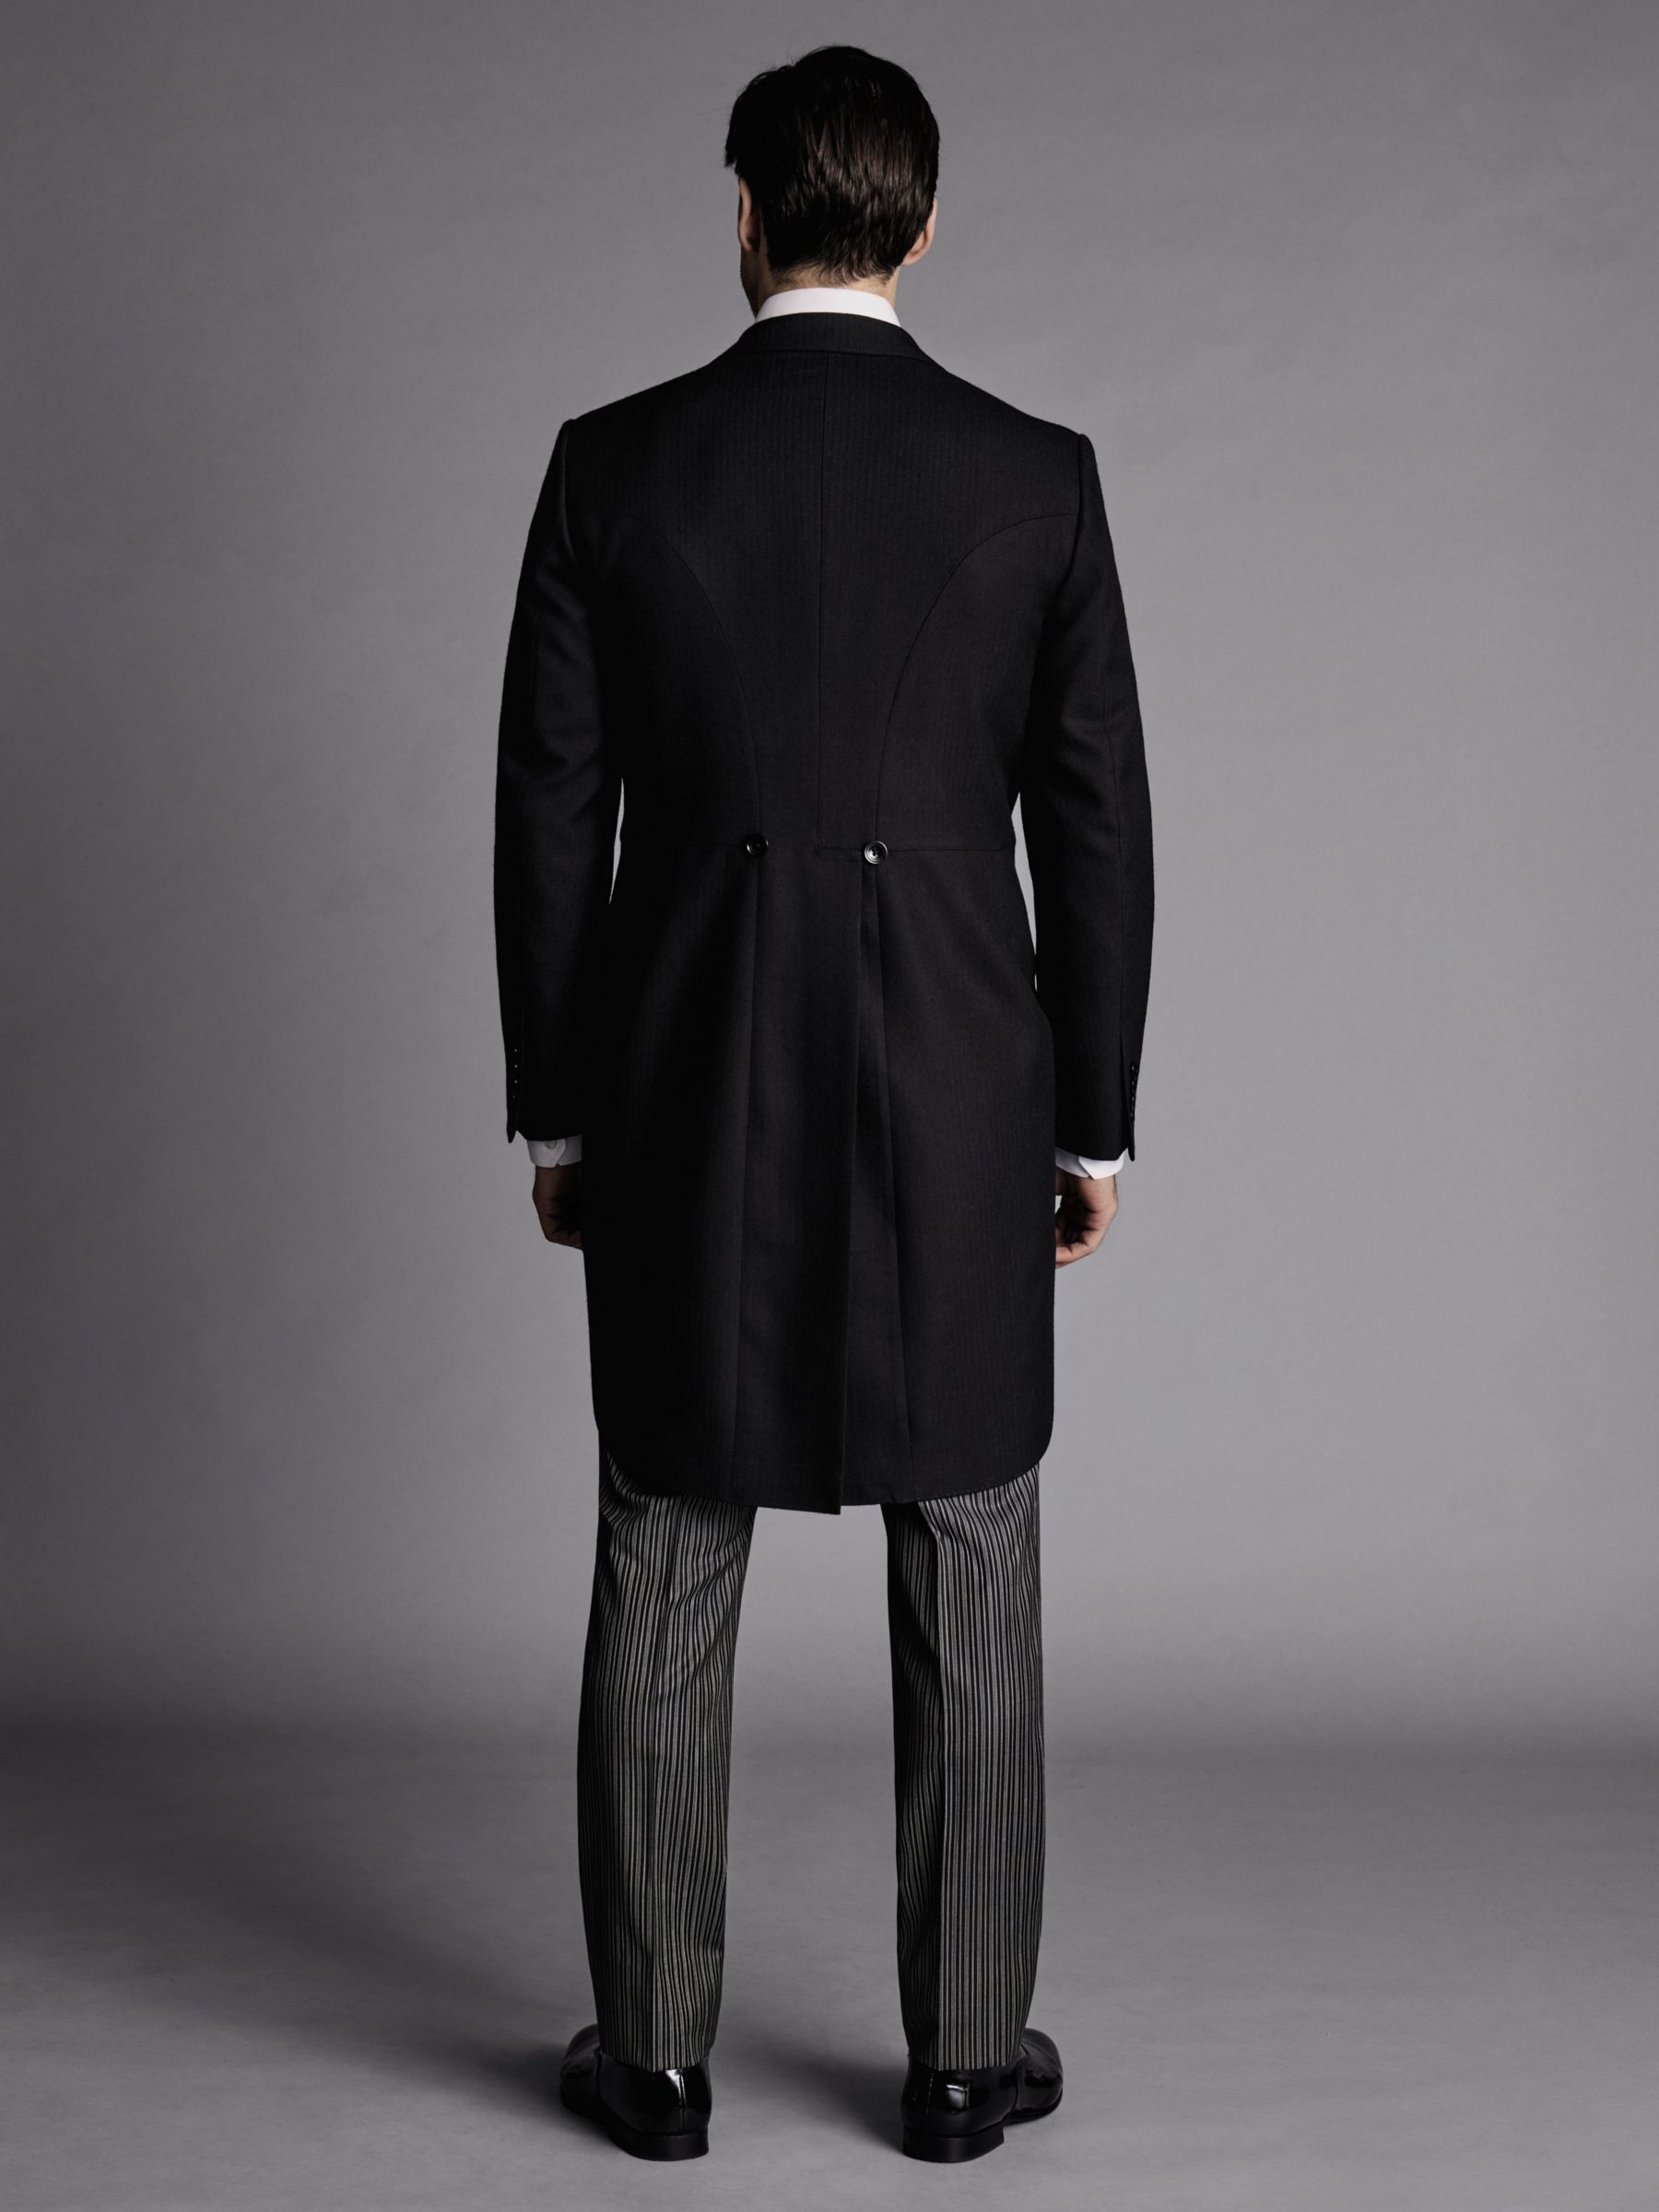 Charles Tyrwhitt Herringbone Slim Fit Morning Suit Tailcoat, Black, 36R